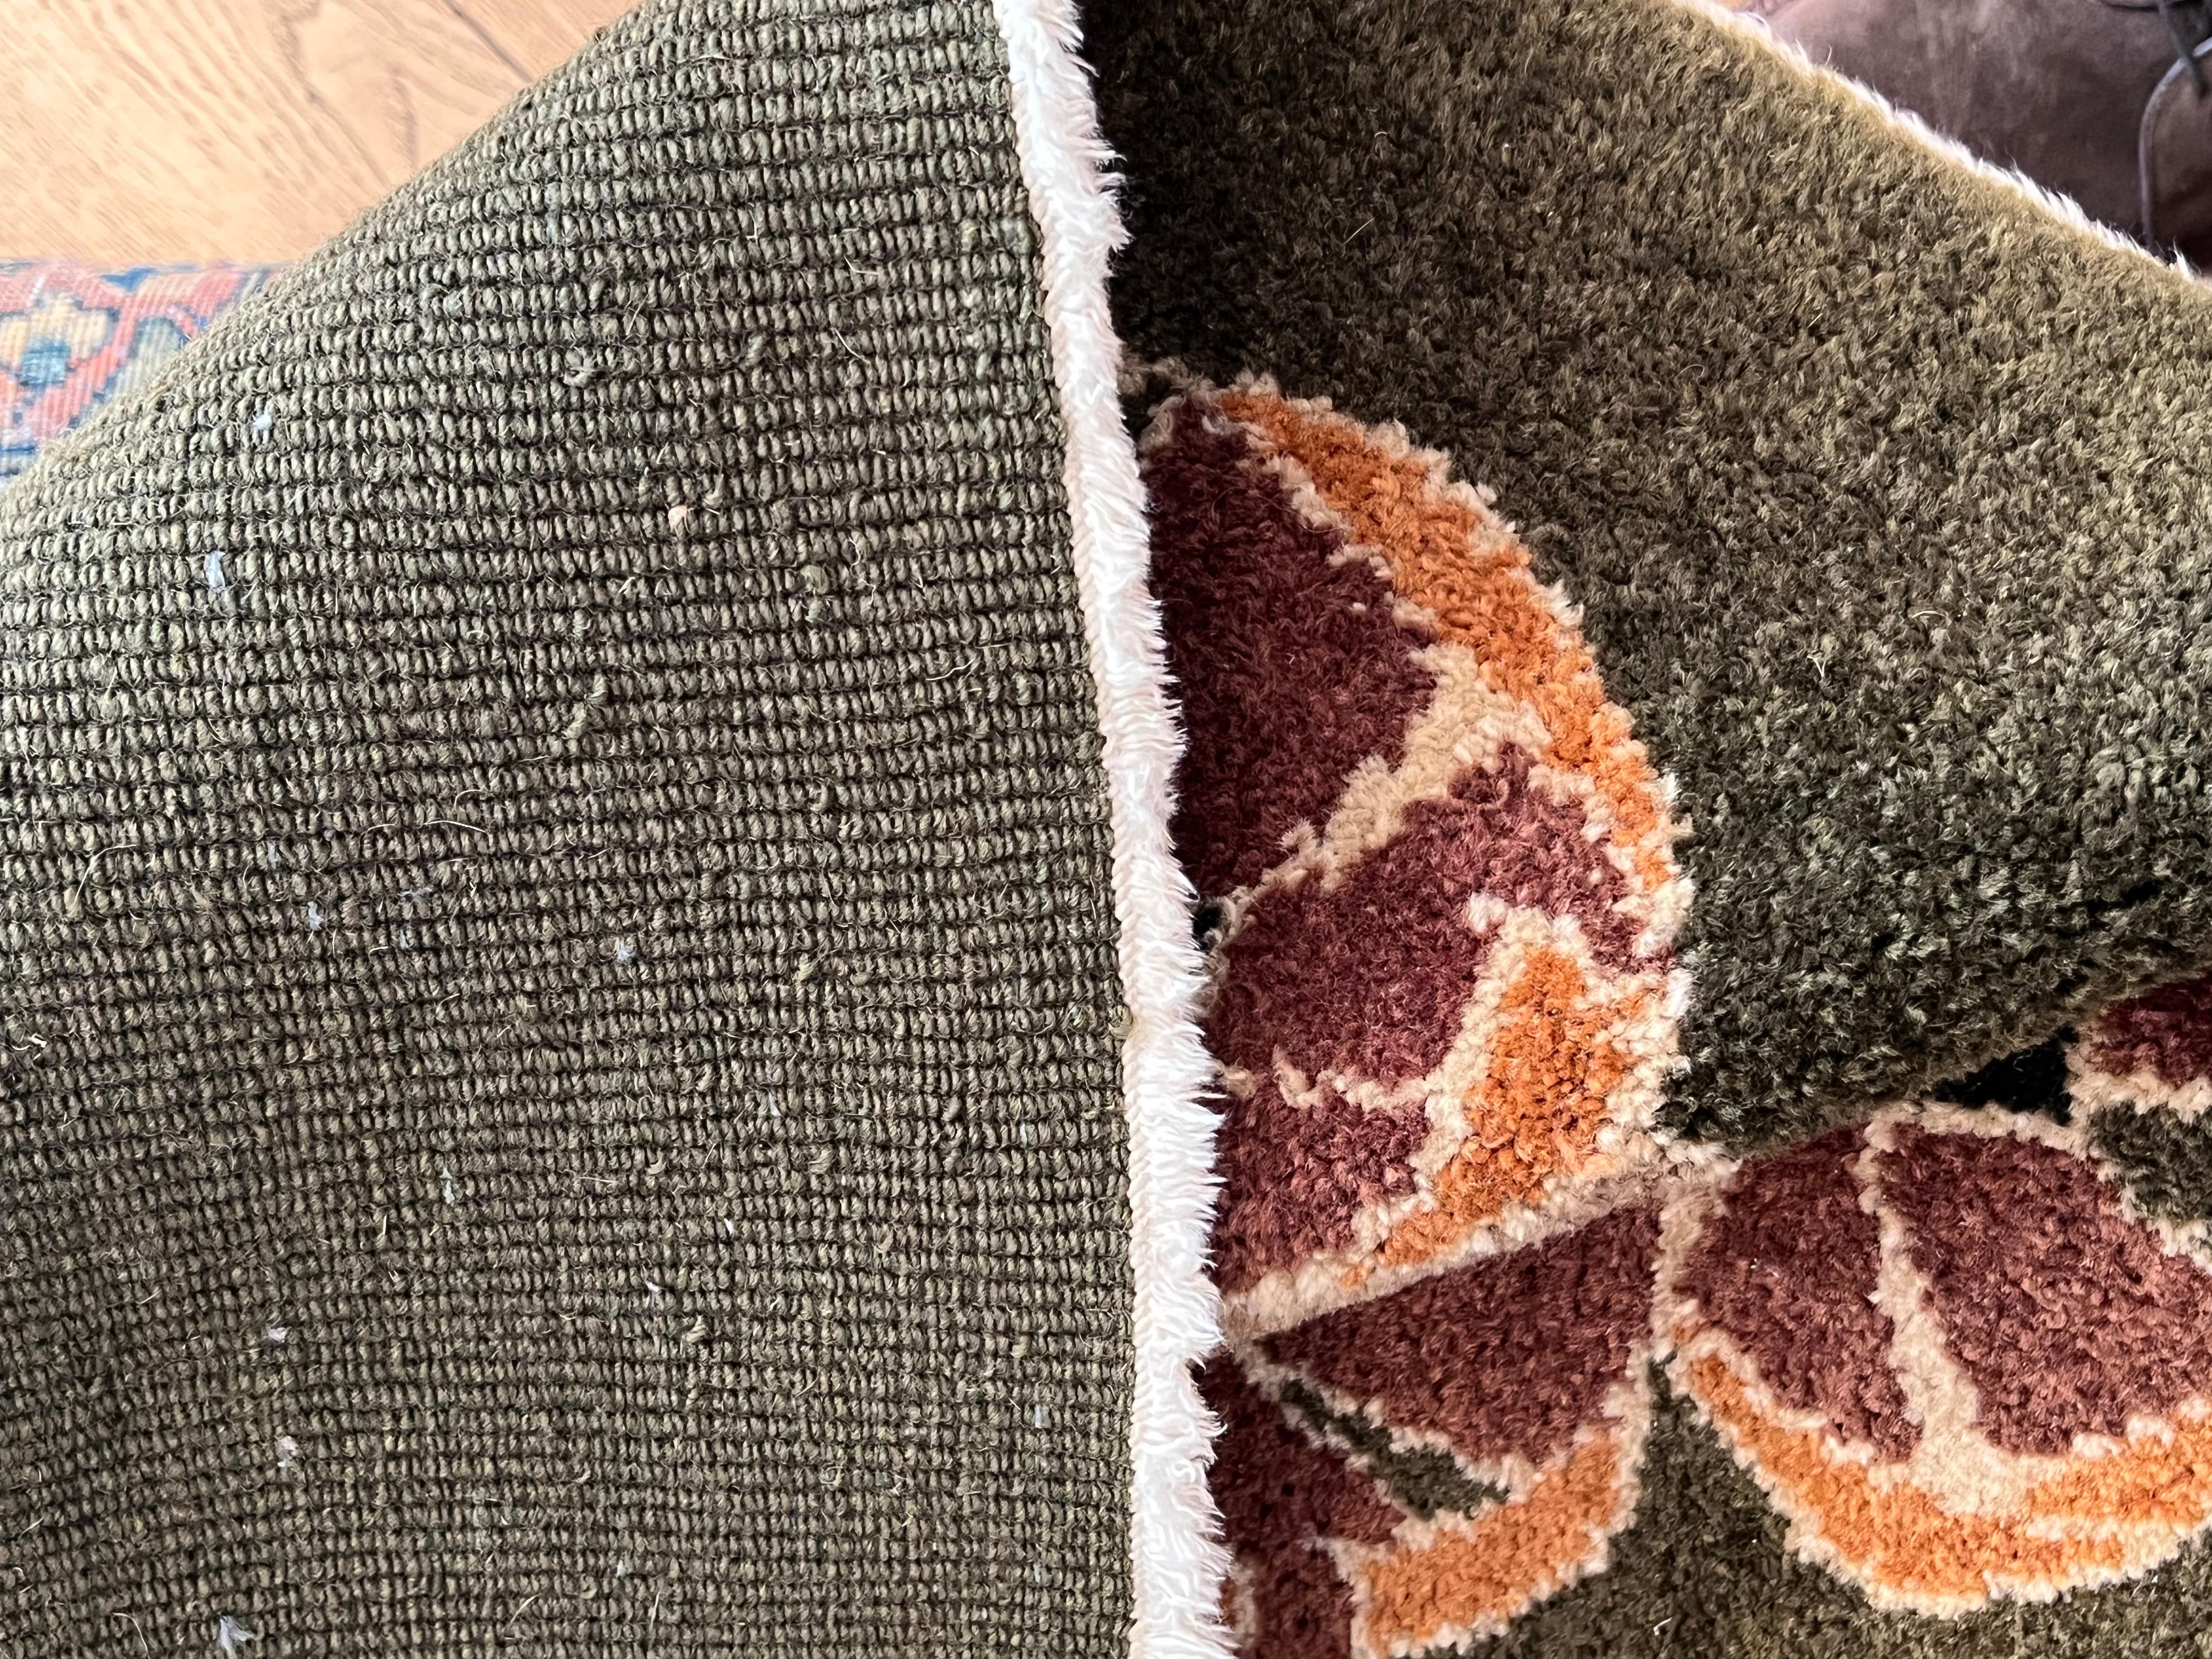 Irische Teppiche haben eine lange und stolze Tradition. Ihre berühmtesten Teppiche stammen aus einer Stadt namens Donegal in Irland. Im Laufe der Jahre ist Donegal Carpets zu einem Markenzeichen für handgefertigte Wollteppiche geworden, und die